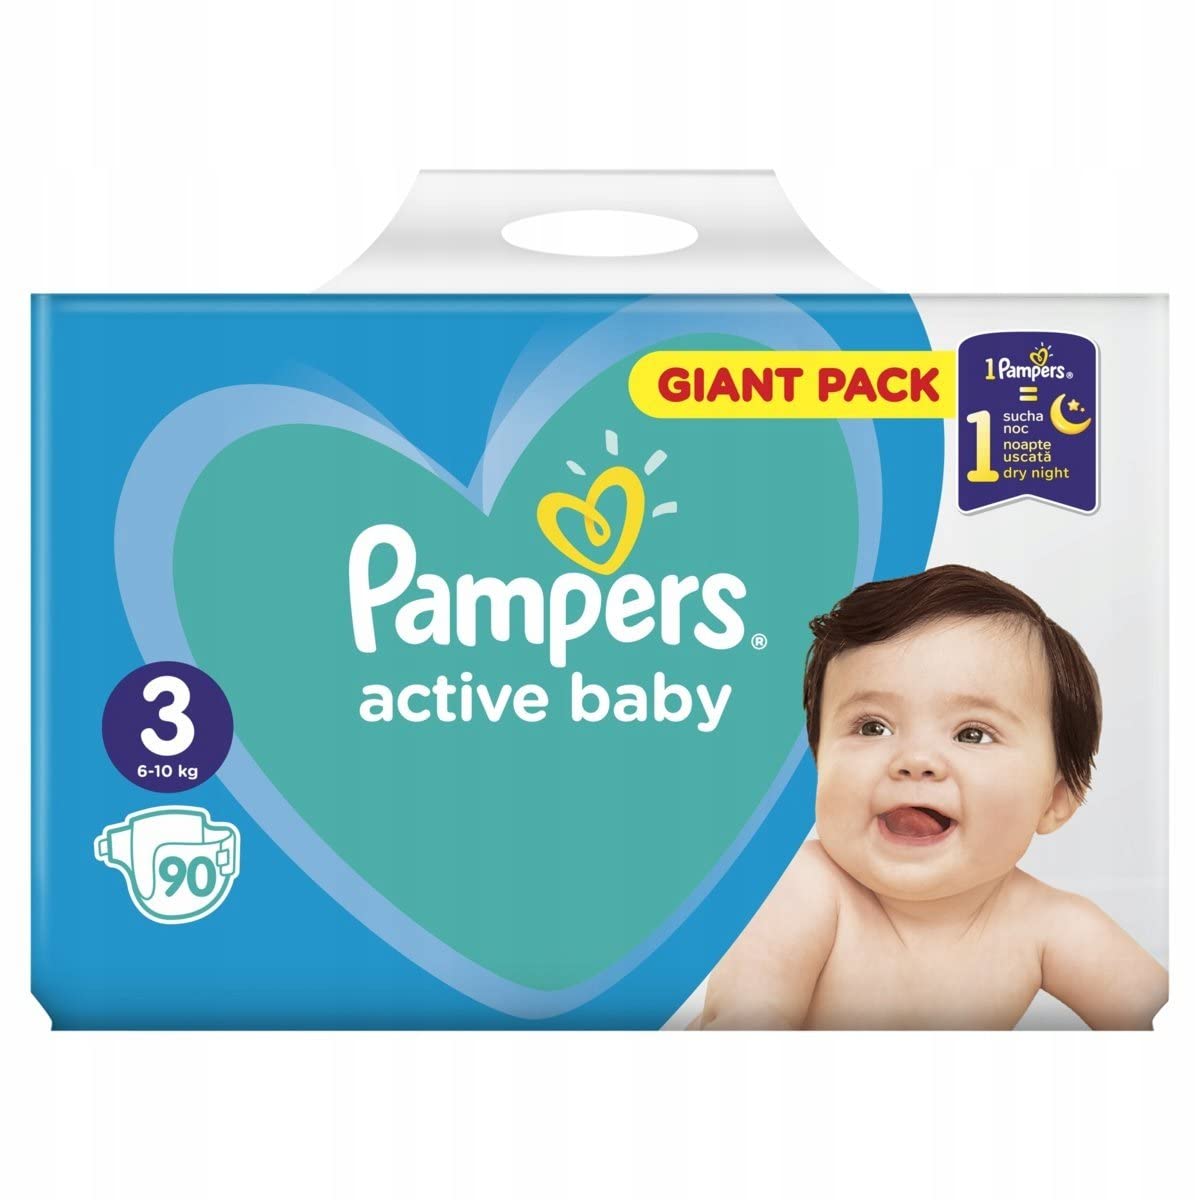 pamper active baby 3